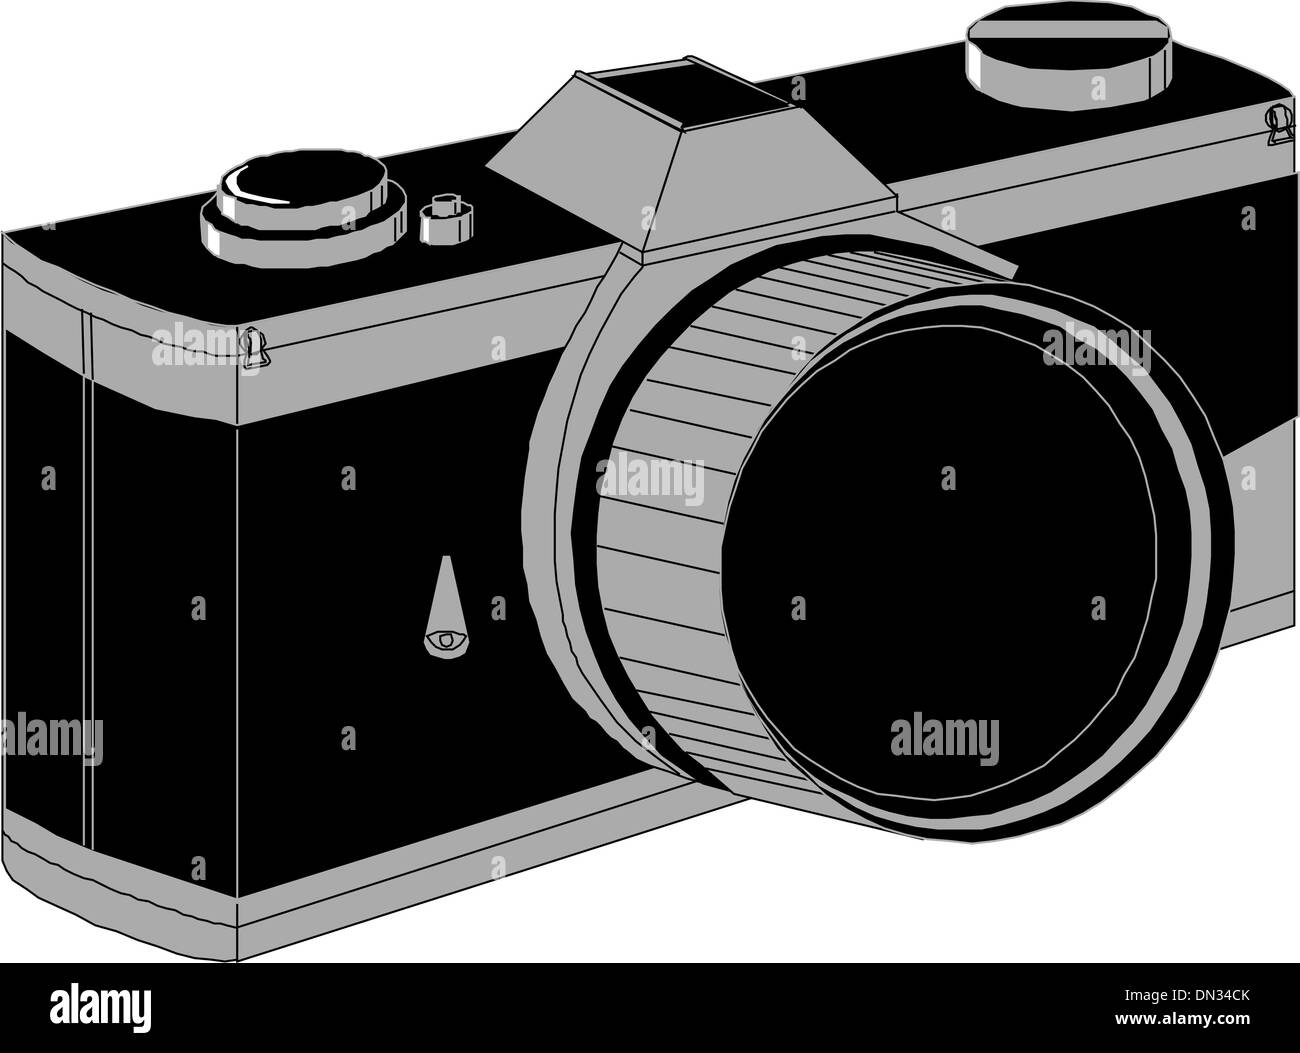 Professional SLR Fotocamera Illustrazione Vettoriale